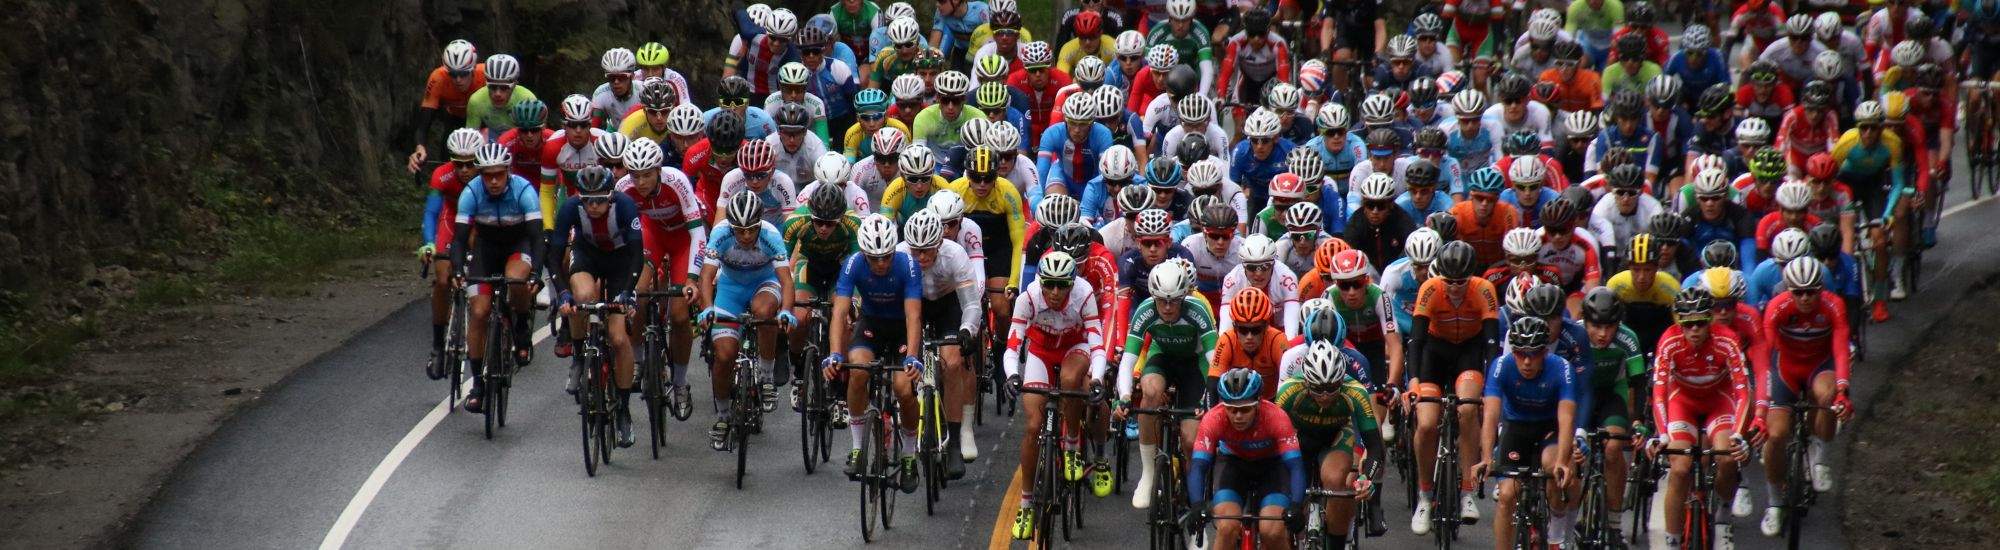 80ème Tour de Pologne: Les meilleurs cyclistes arrivent à Cracovie